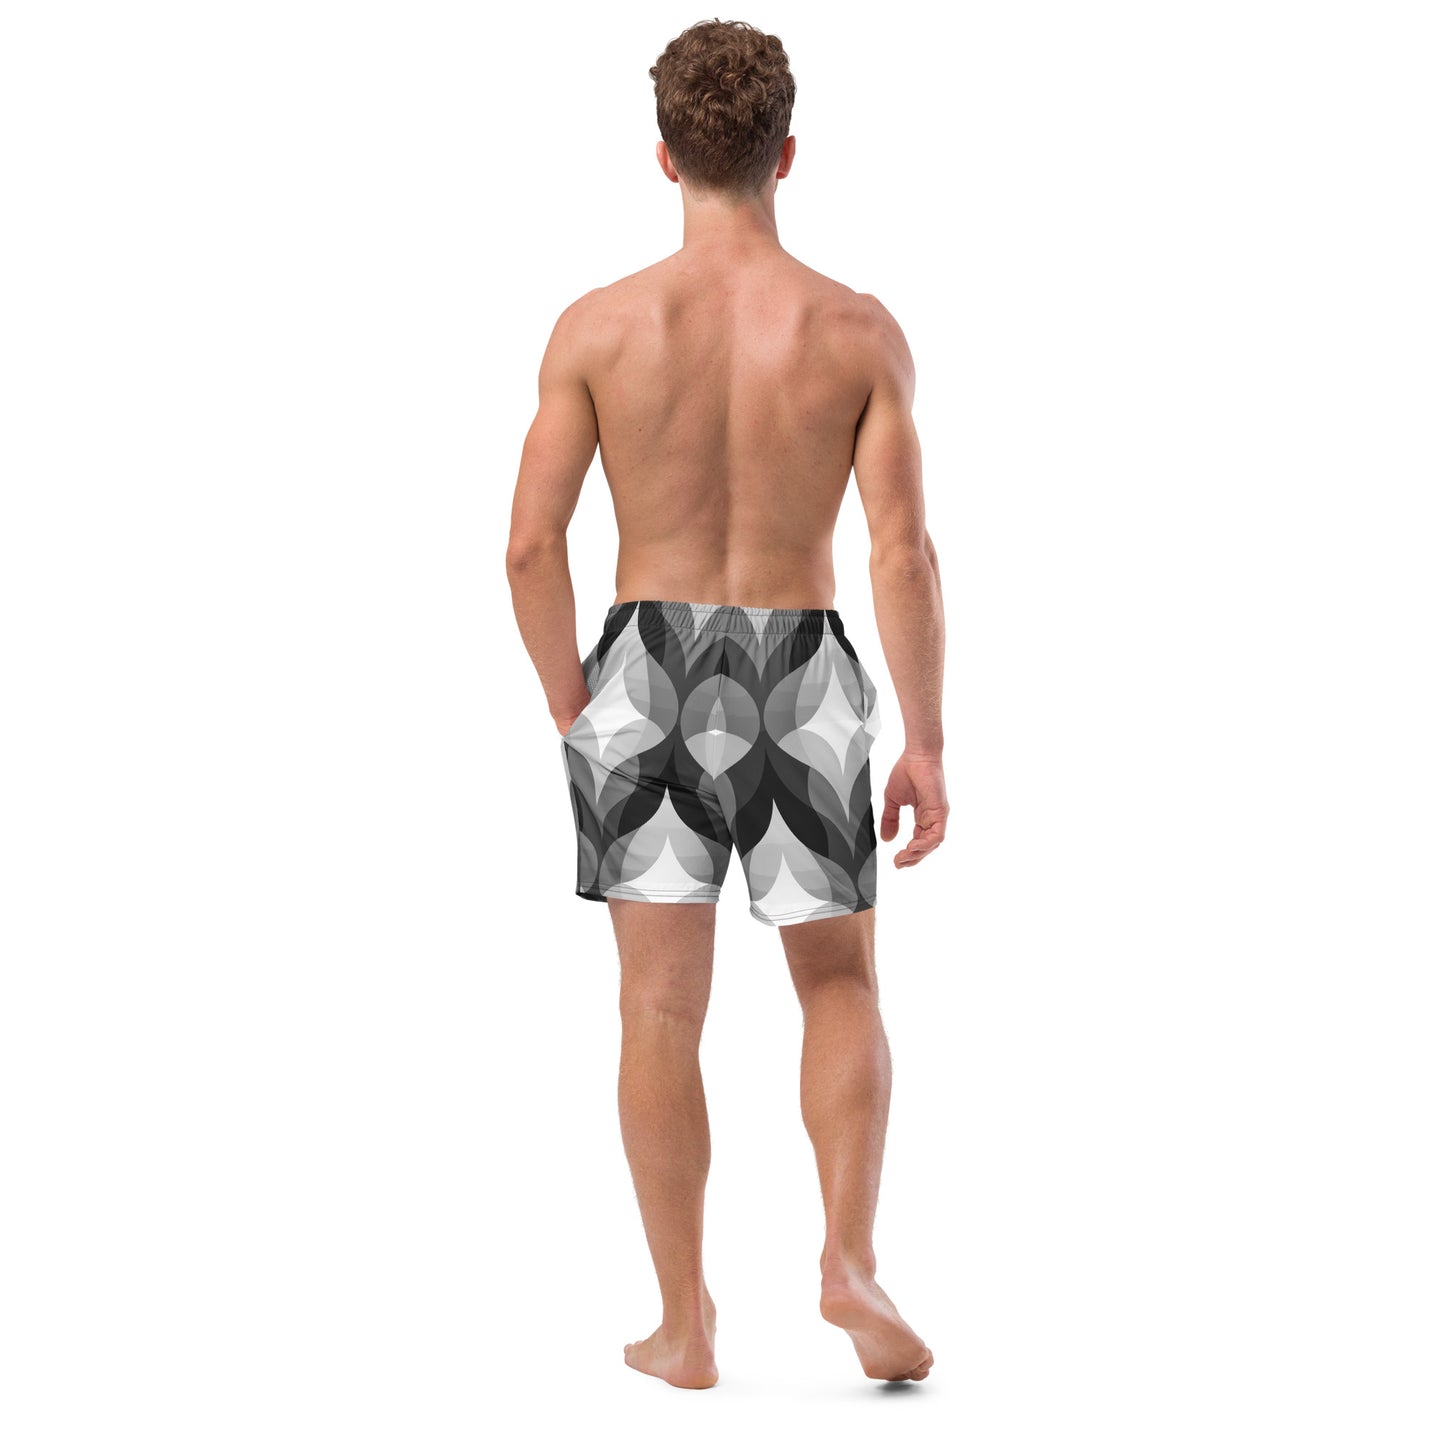 Men's Elect swim trunks